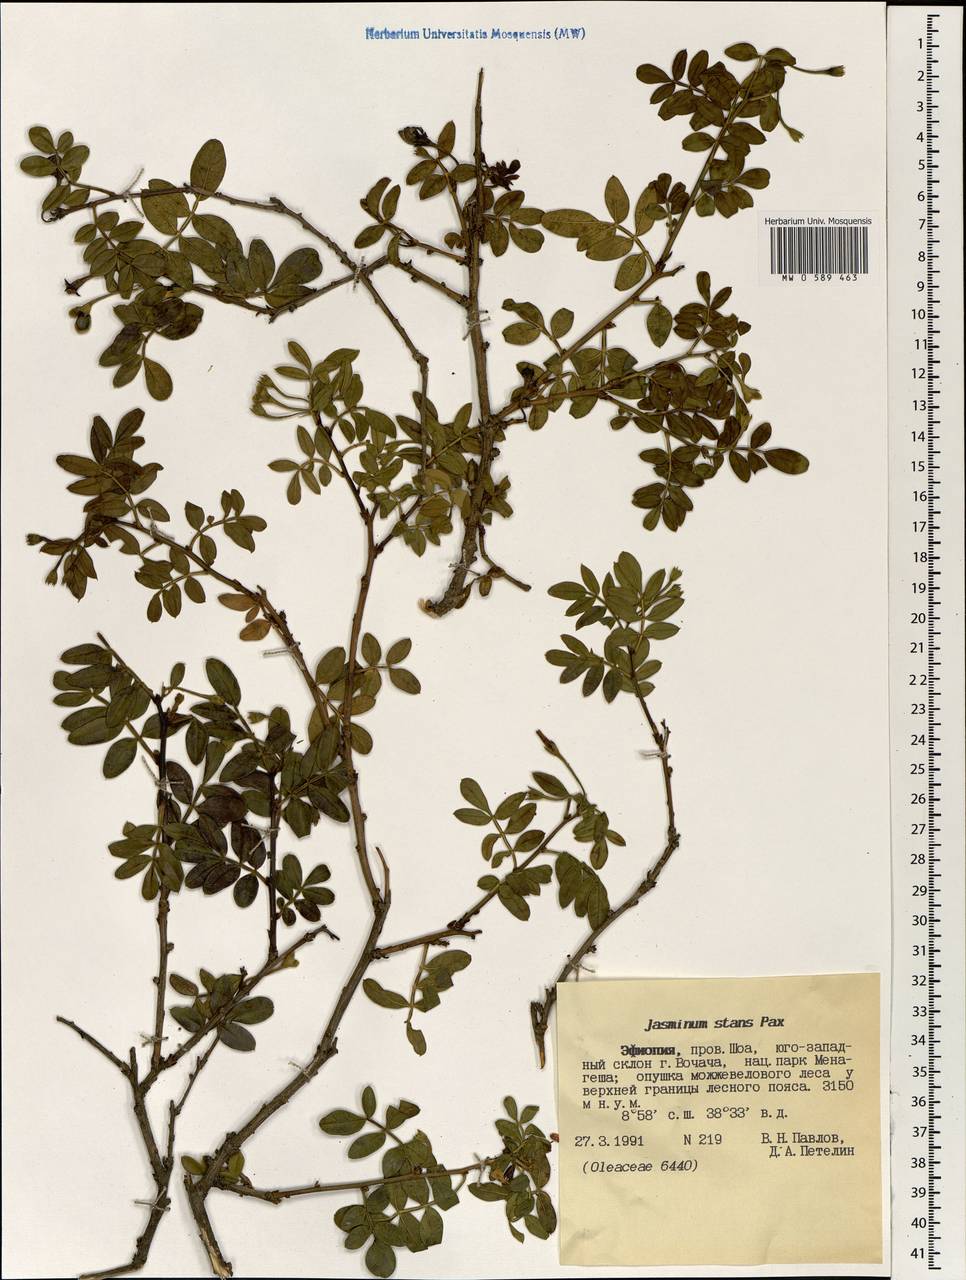 Chrysojasminum stans (Pax) Banfi, Африка (AFR) (Эфиопия)